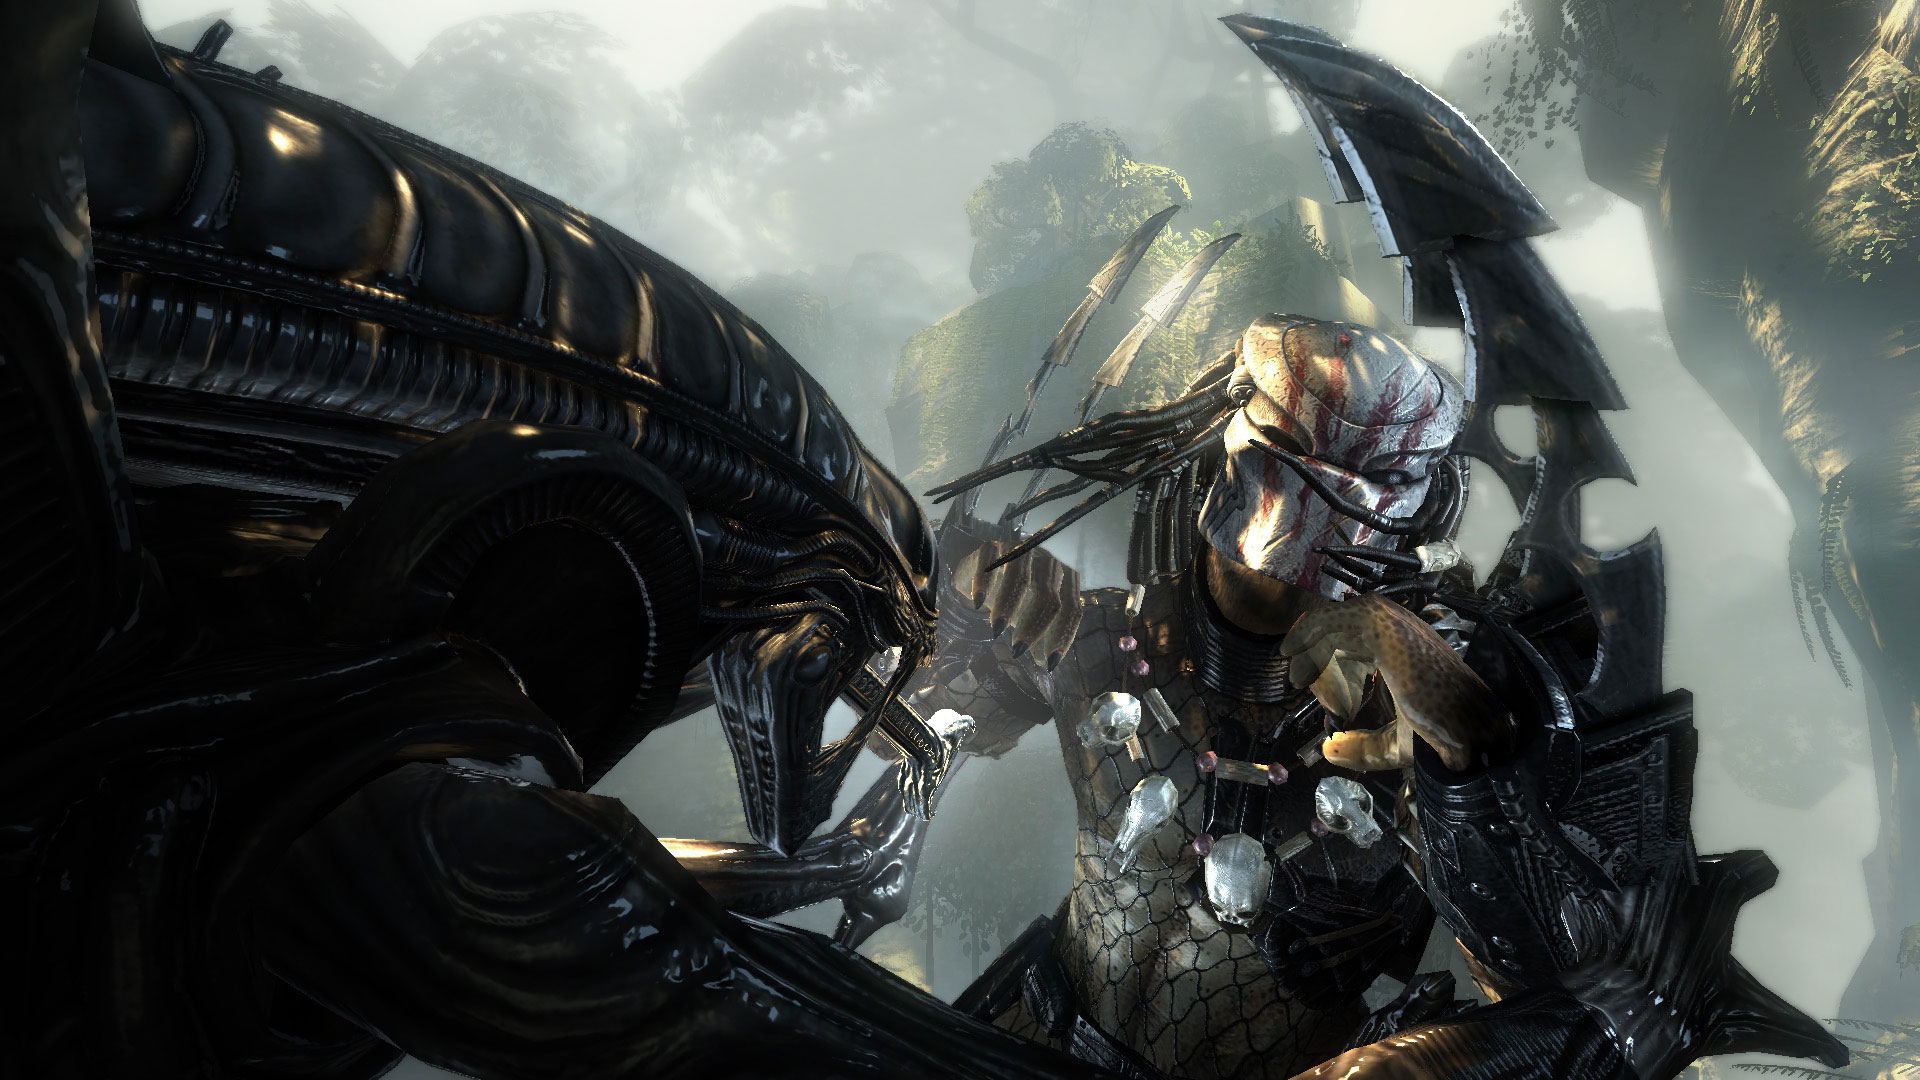 Immagine pubblicata in relazione al seguente contenuto: SEGA pubblica nuovi screenshot di Aliens vs. Predator | Nome immagine: news10579_4.jpg